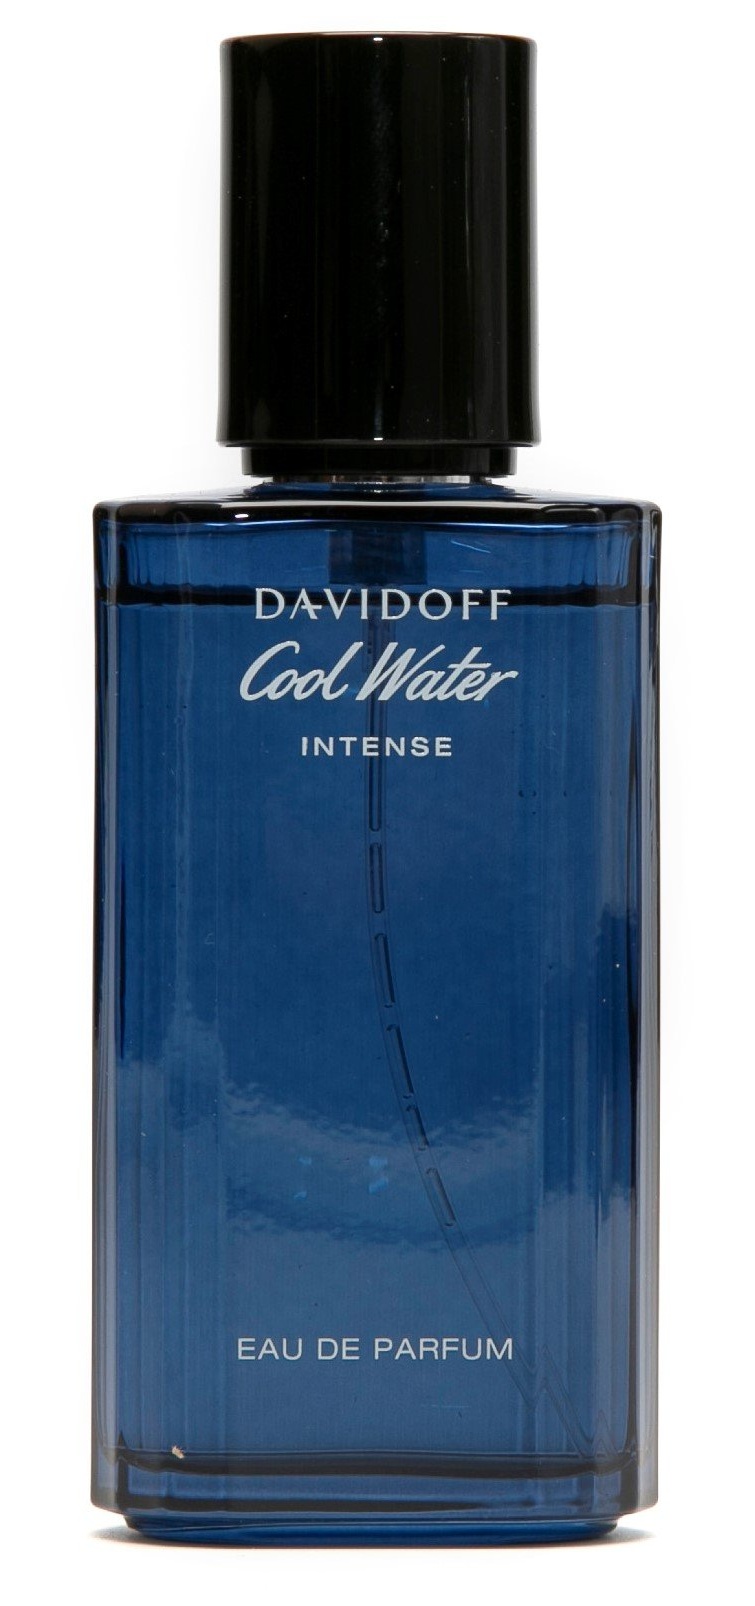 Bild von Cool Water Intense Eau de Parfum 75 ml